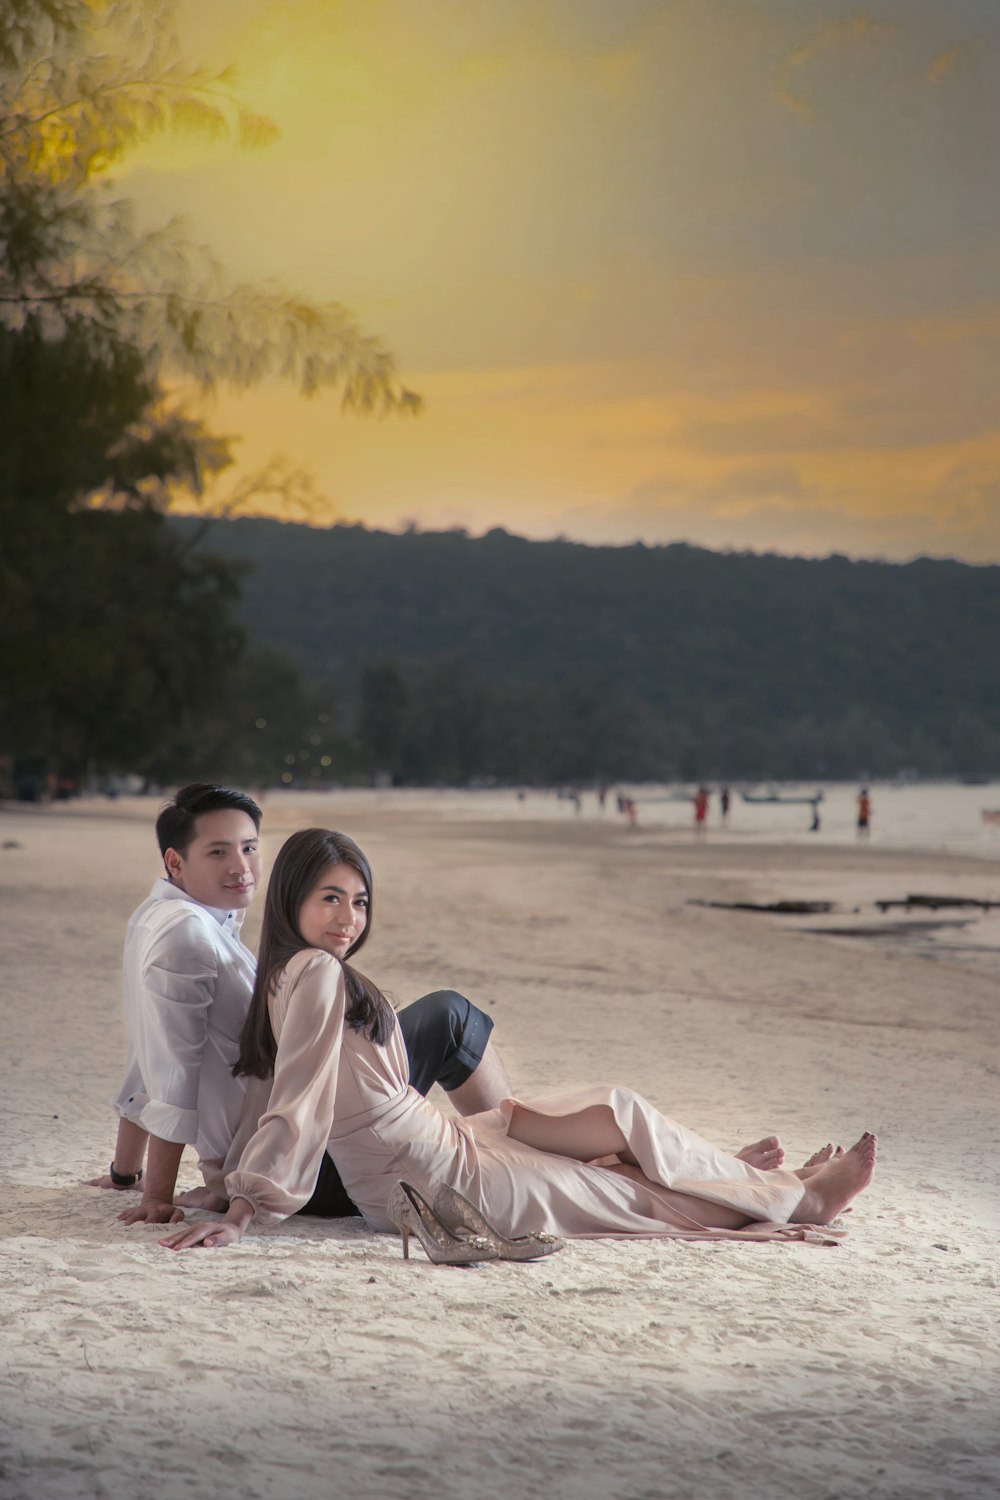 Hombre y mujer sentados en la arena durante la puesta del sol